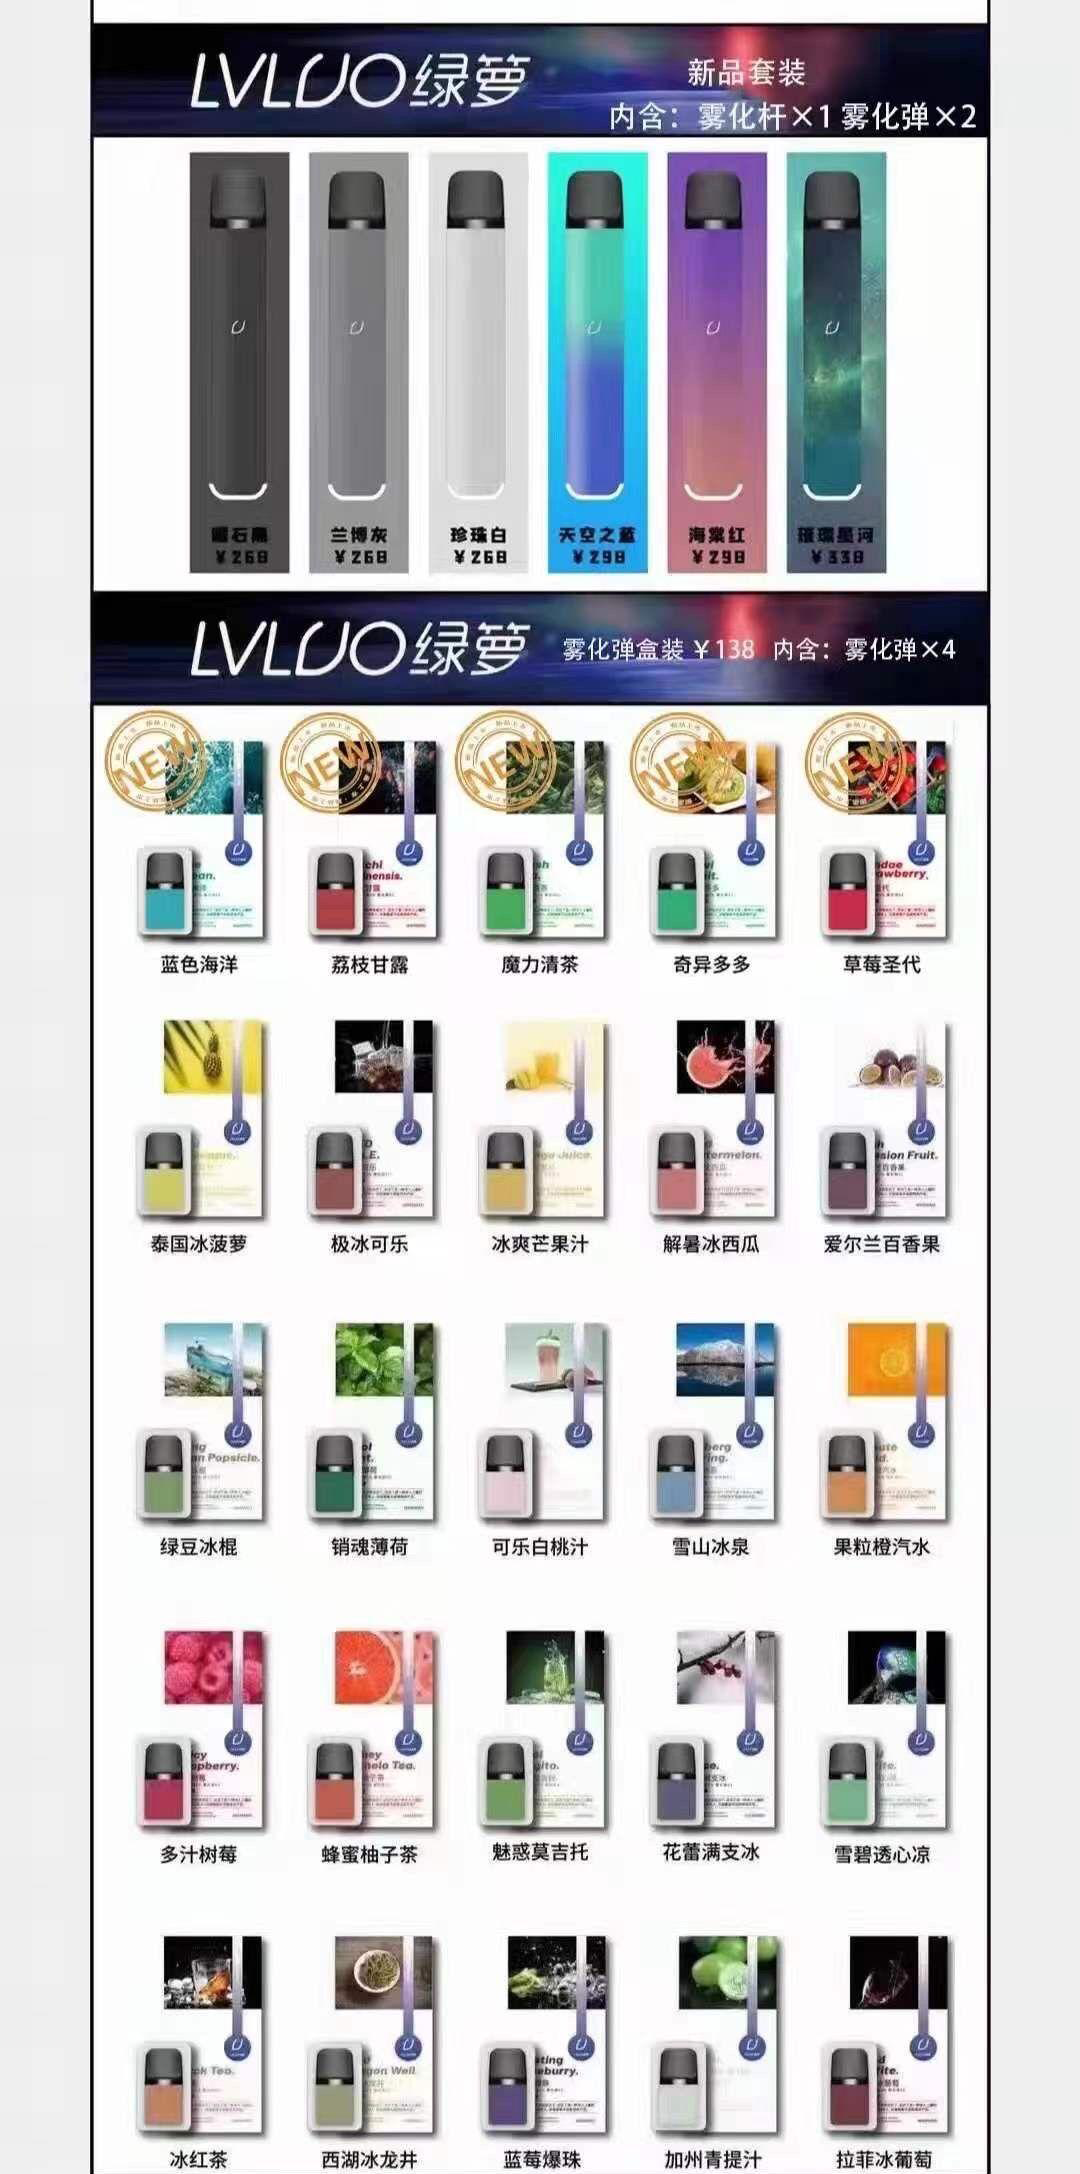 LVLUO绿萝电子雾化器 近期增加了5种新口味 新品上市